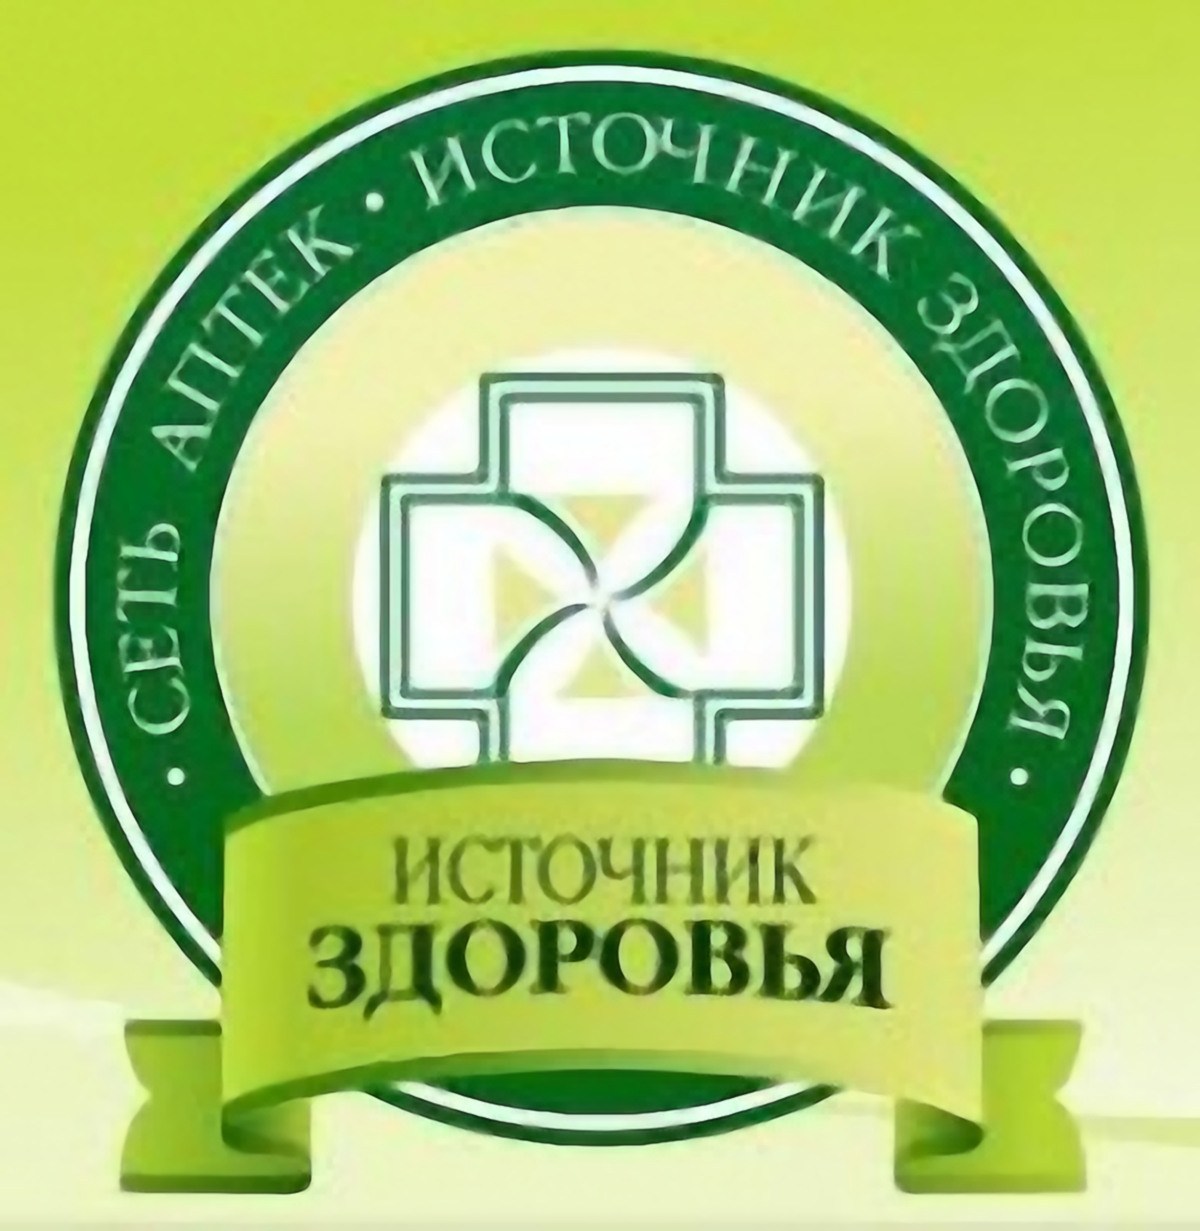 Источник здоровья. Аптеки источник здоровья Екатеринбург. Источник здоровья логотип. Источник здоровья сайт